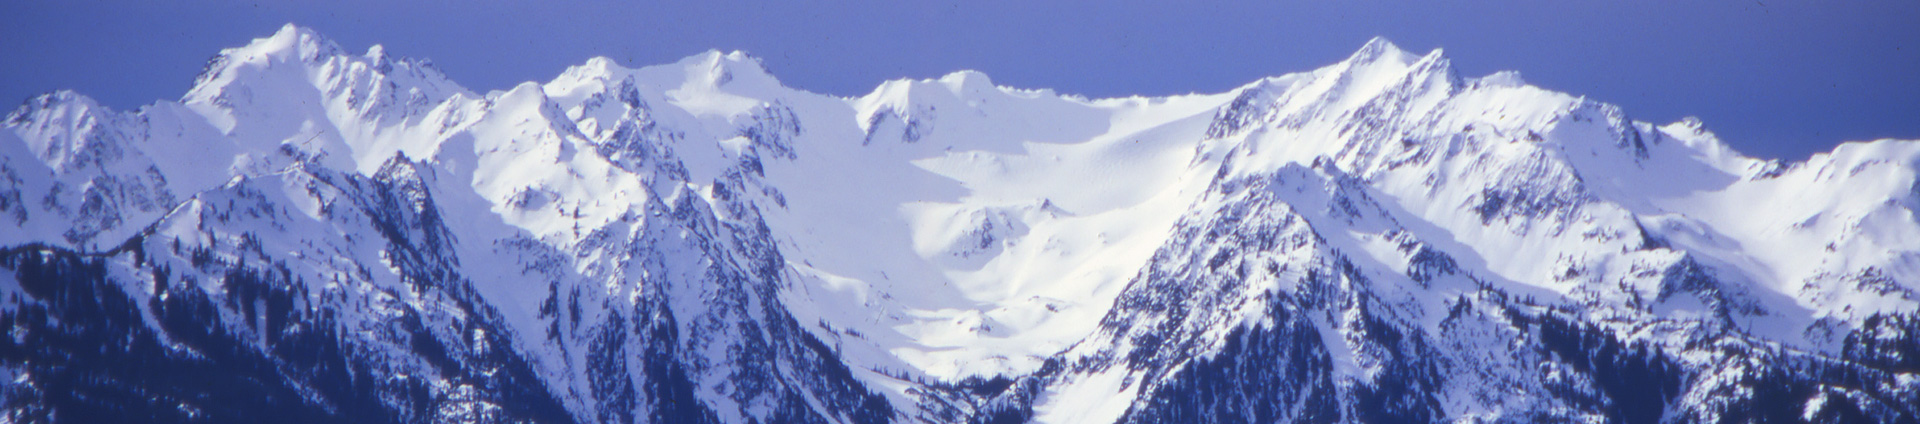 imagen de cabecera de las montañas olímpicas nevadas